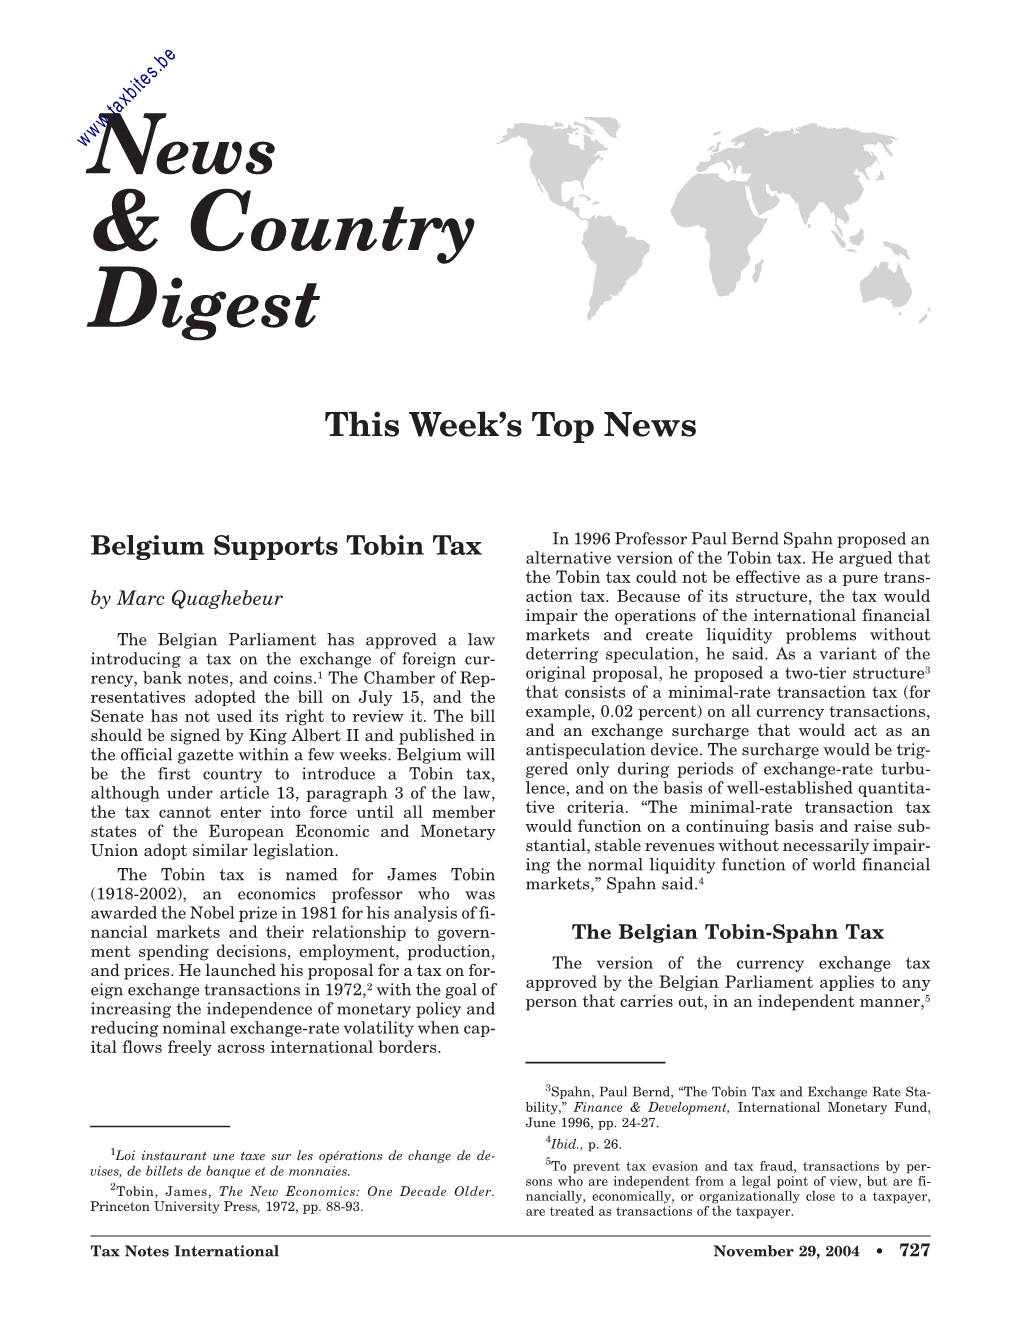 Belgium Supports Tobin Tax Alternative Version of the Tobin Tax